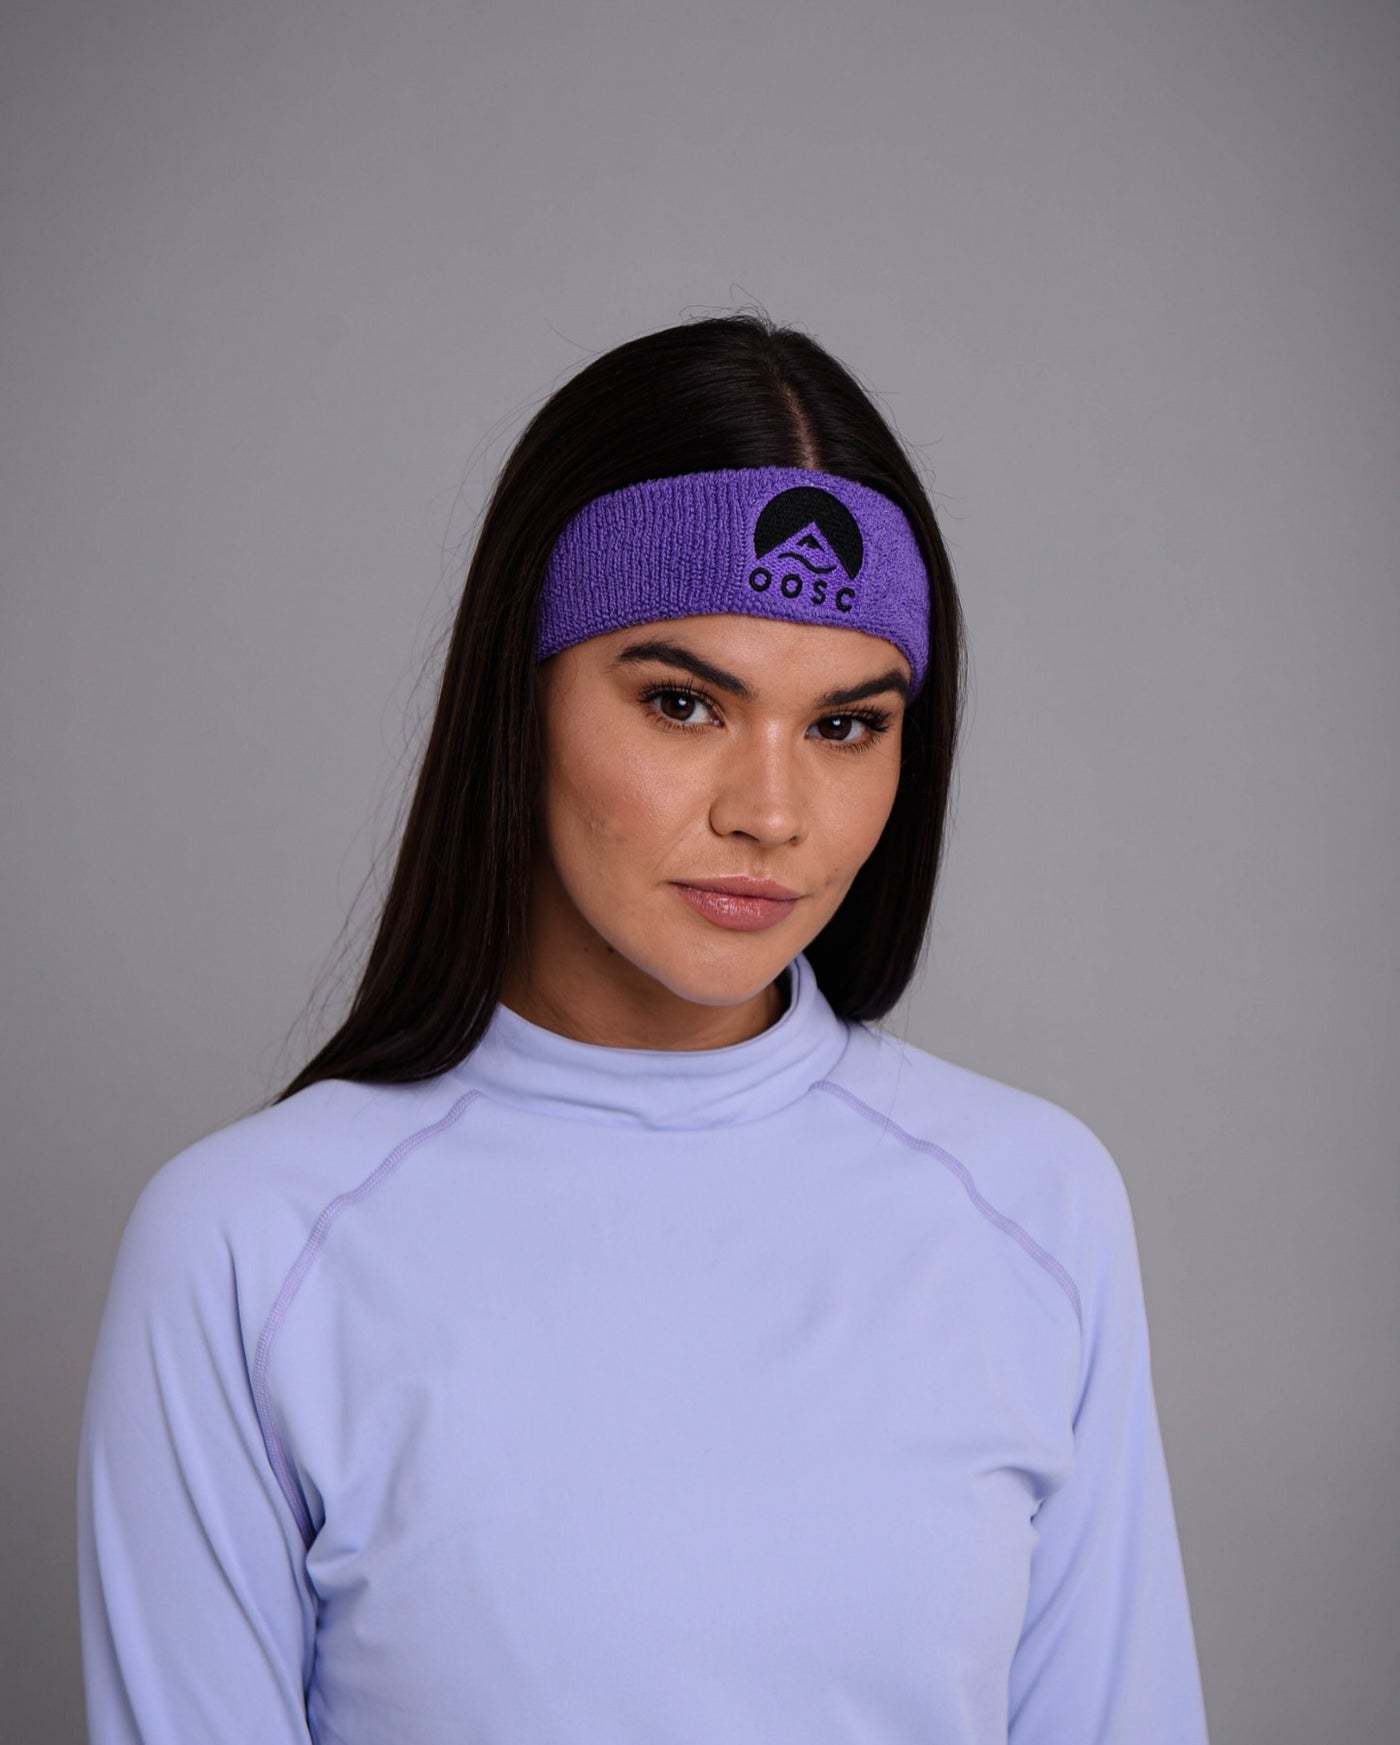 purple oosc skiing headband